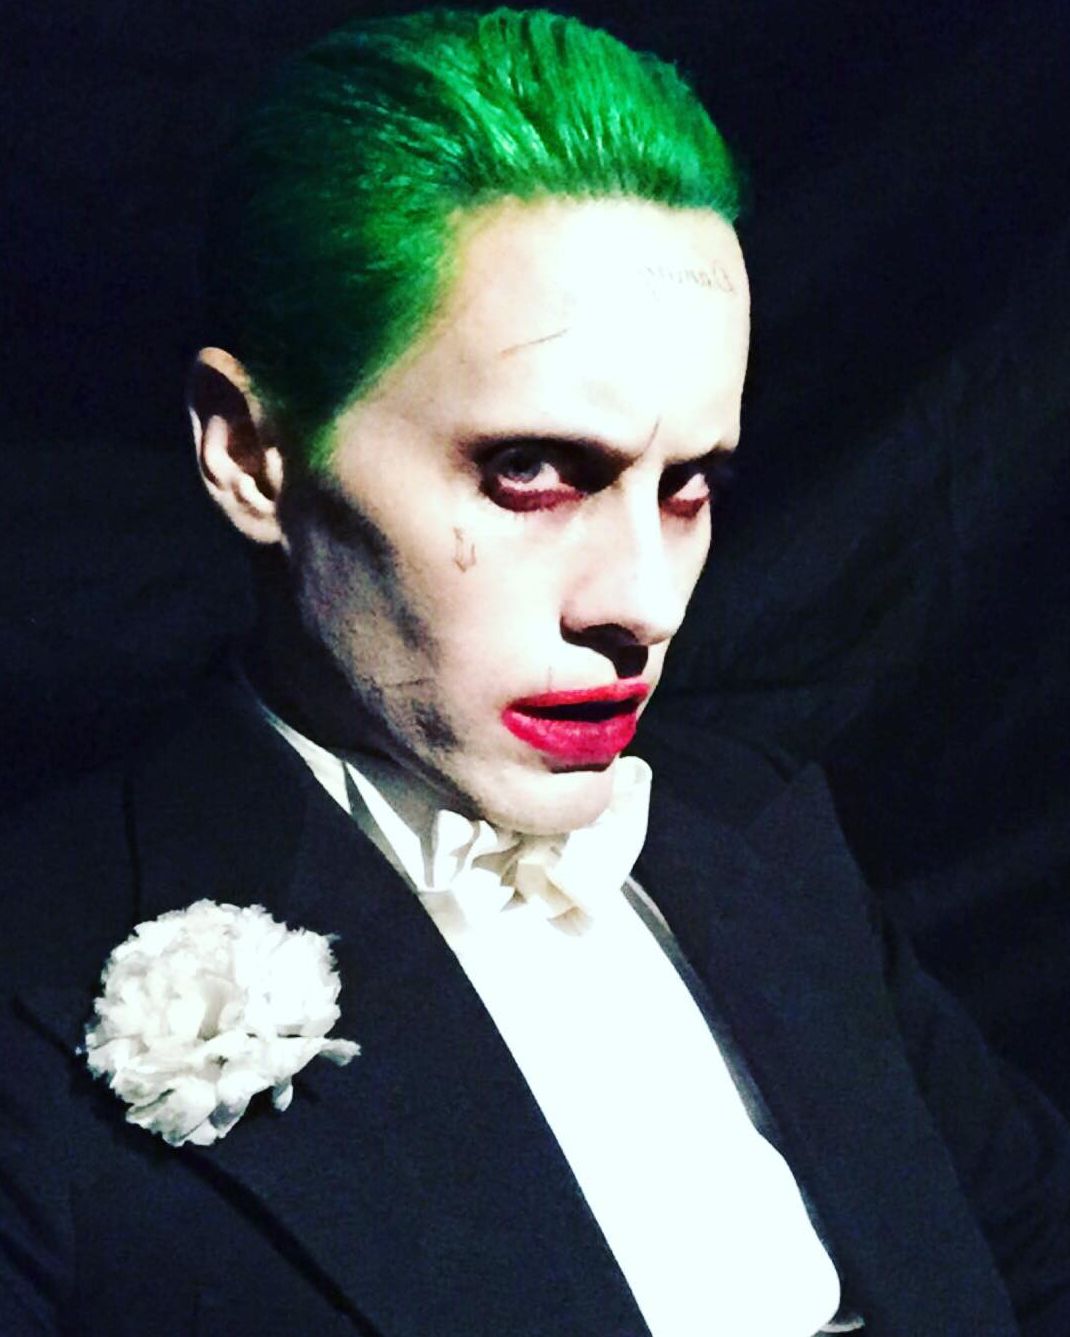 Jared Leto releases an unsettling new Joker photo